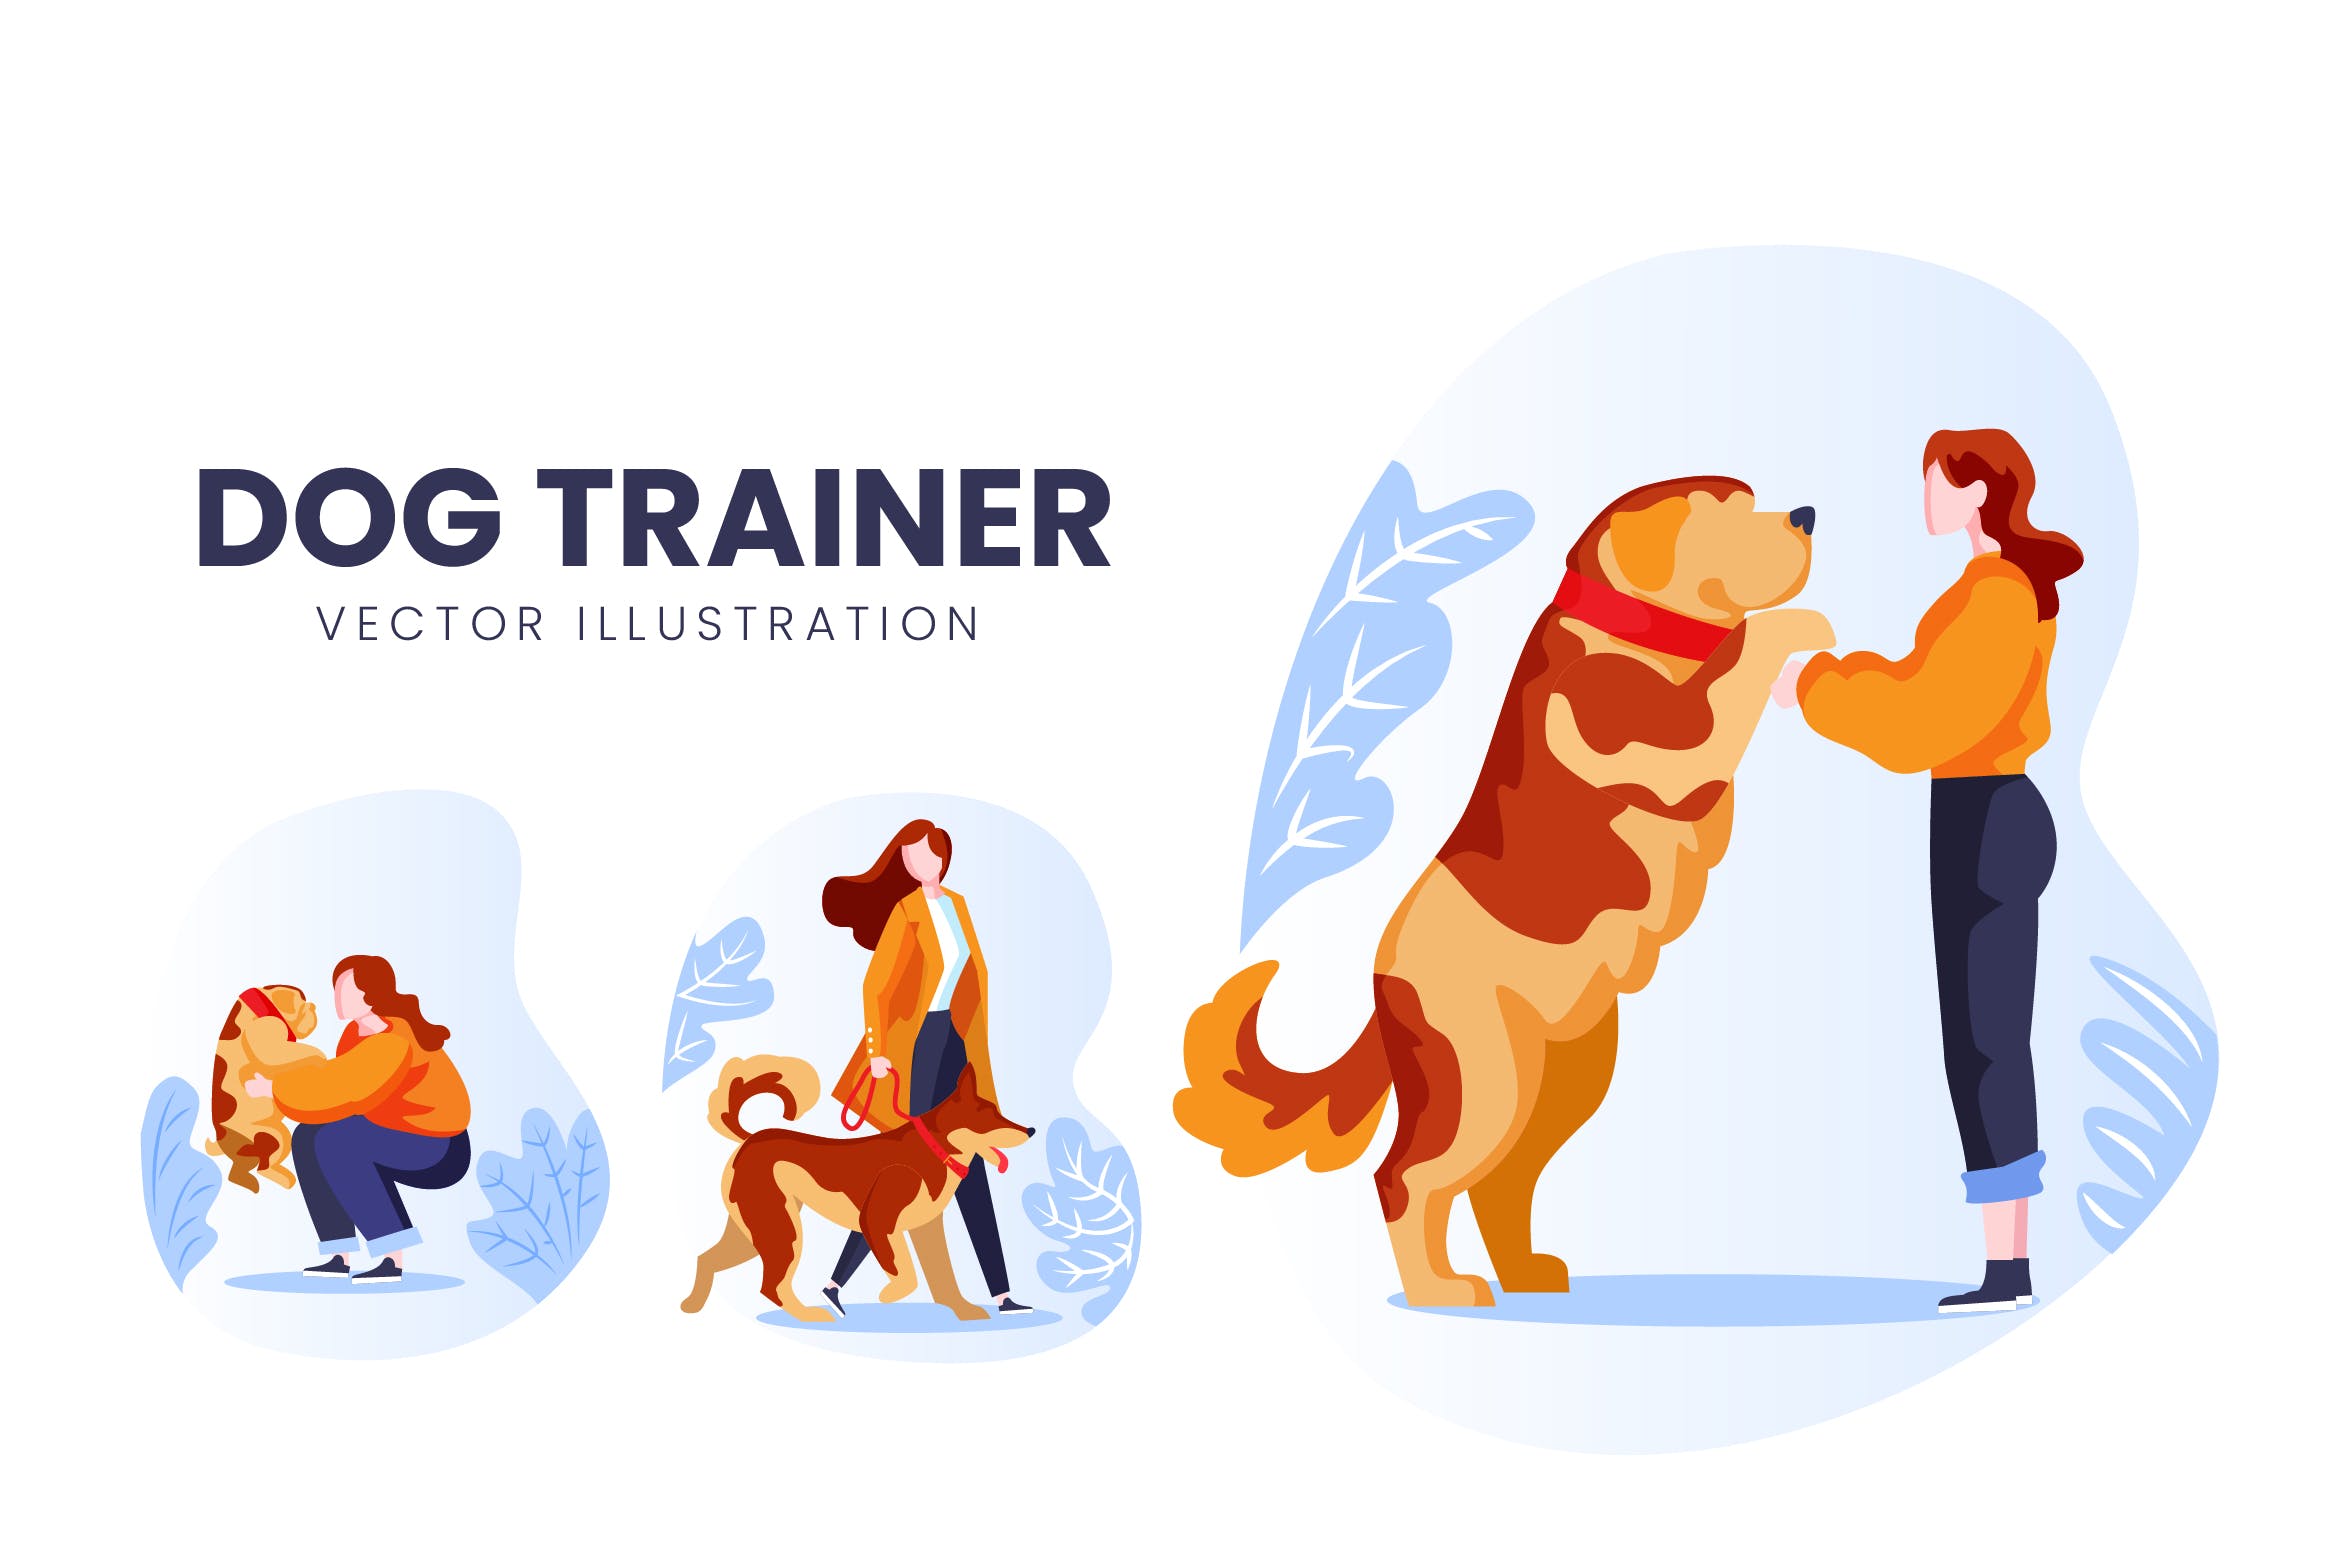 训犬员人物形象第一素材精选手绘插画矢量素材 Dog Trainer Vector Character Set插图